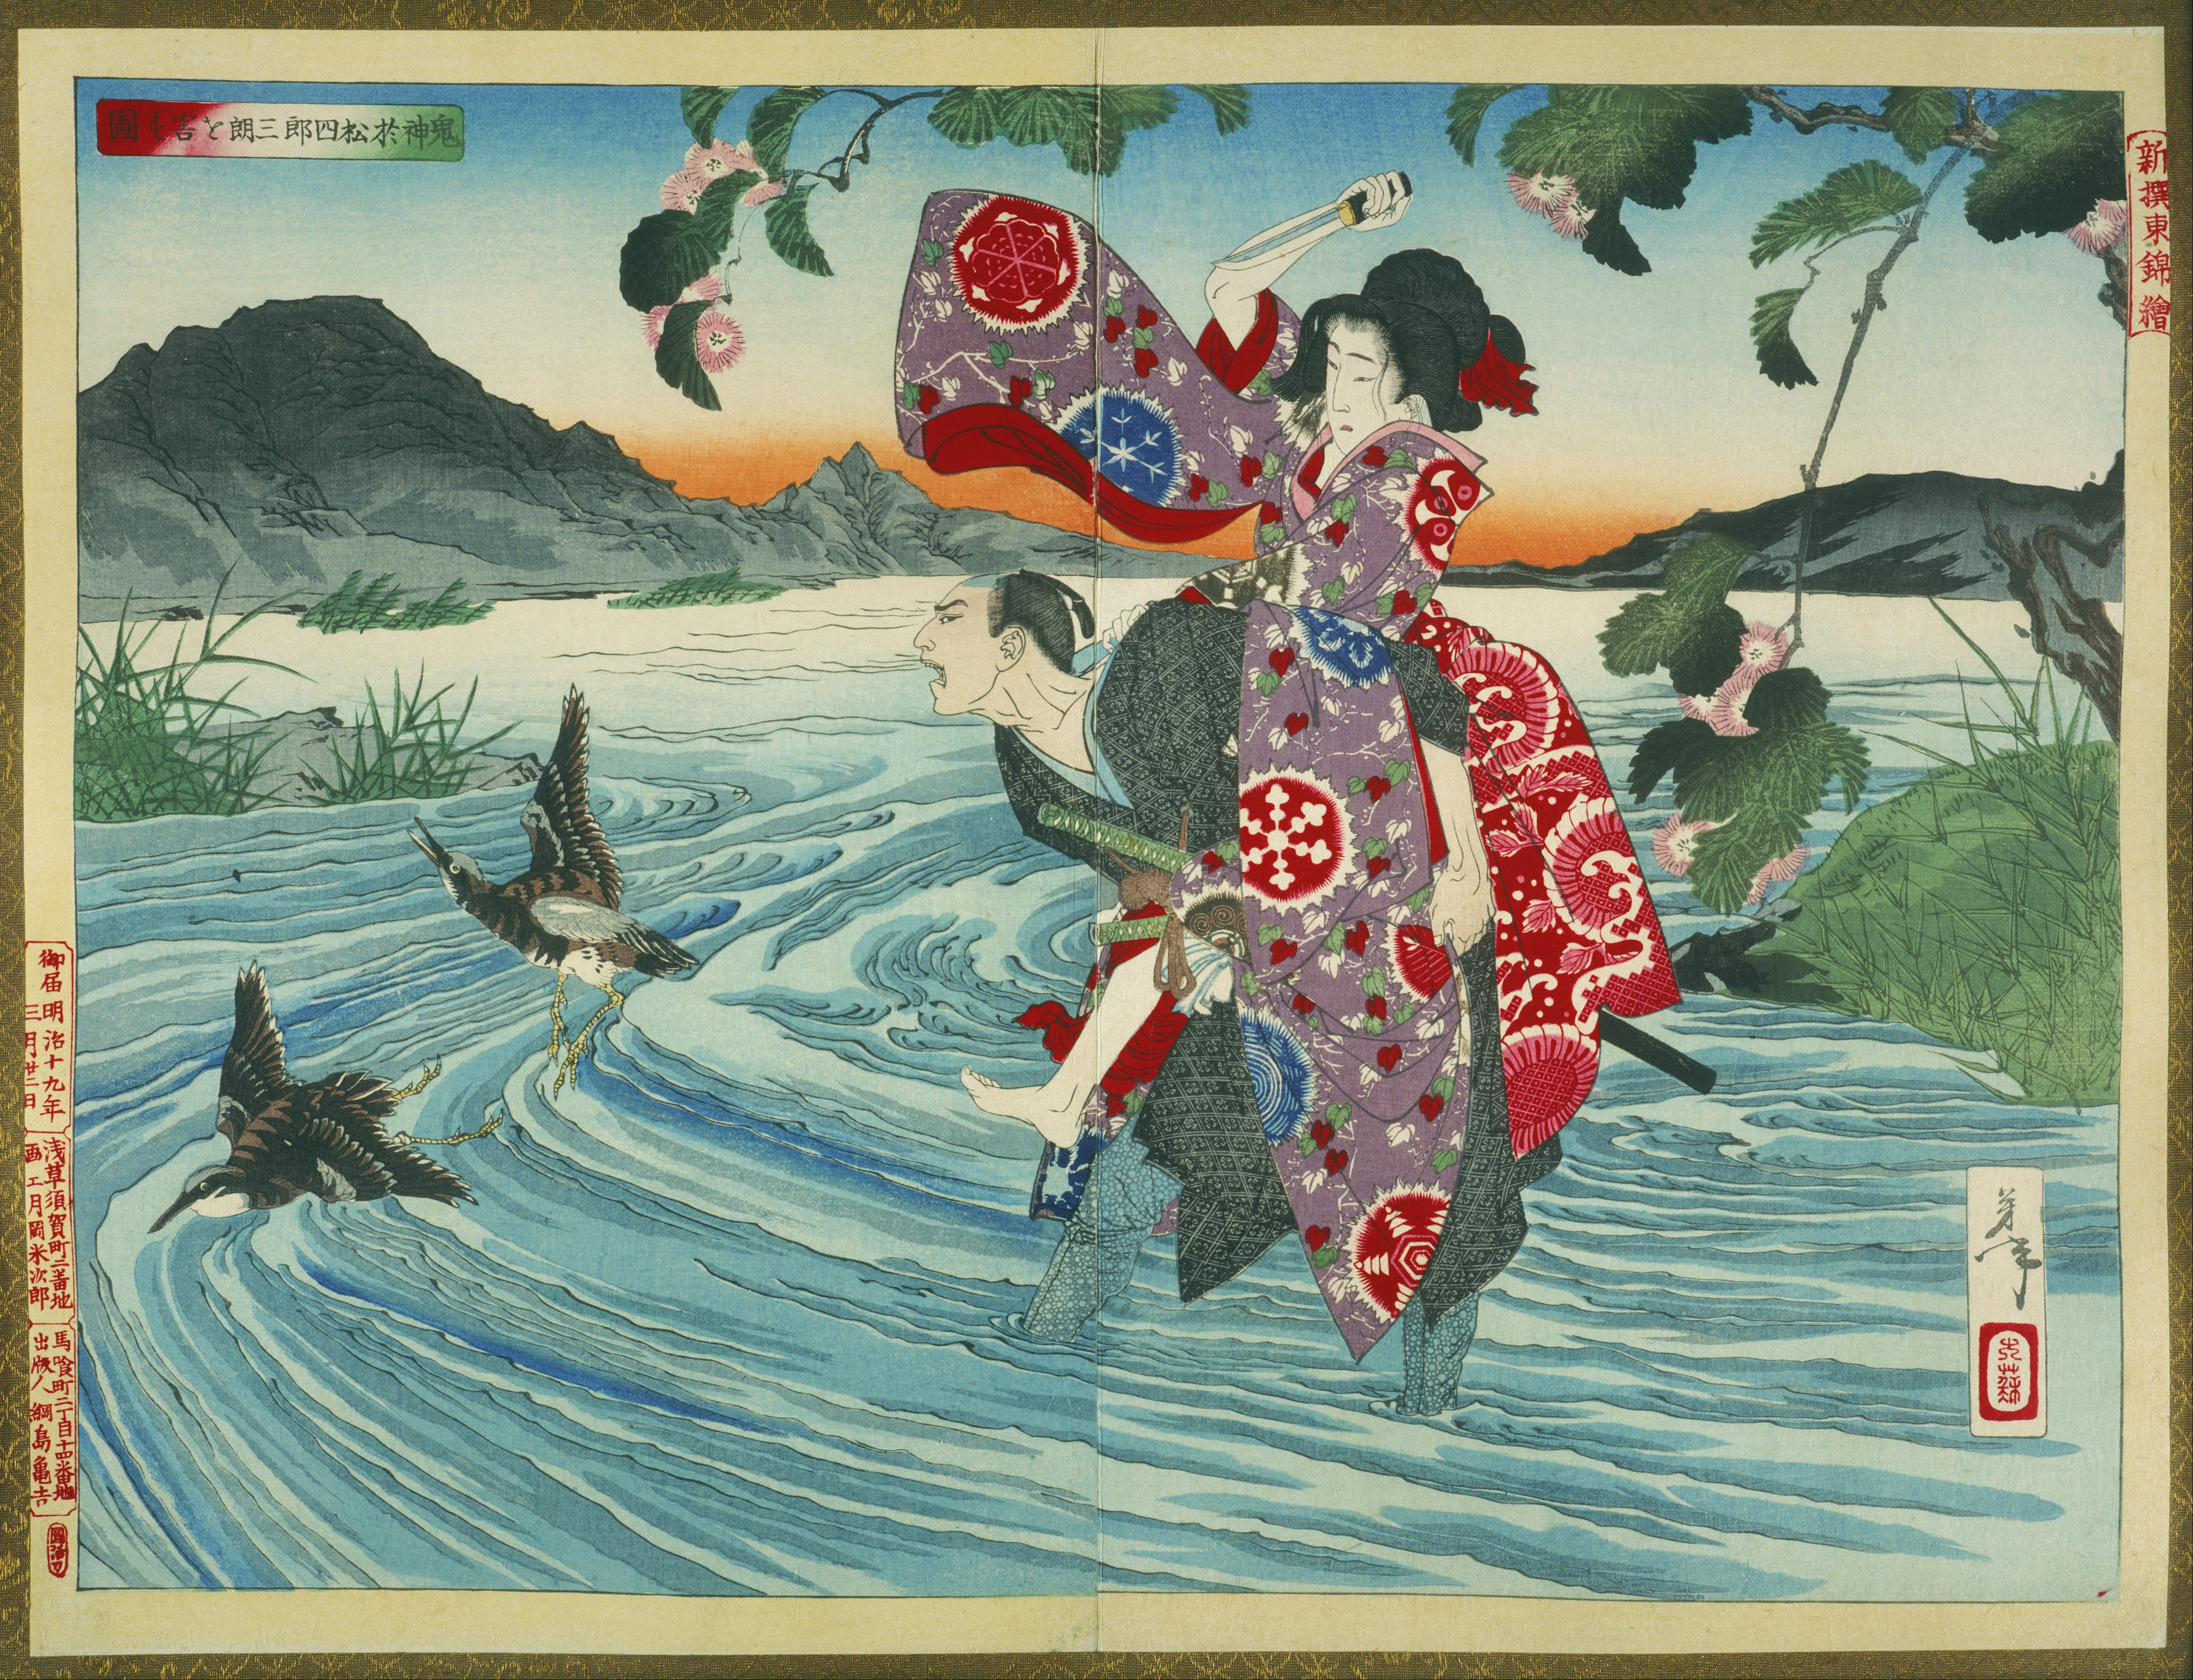 Демон Омацу убивает Широсабуро в фьорде (The Demon Omatsu Murders Shirosaburō in the Ford) by Tsukioka Yoshitoshi - 1885 - 39.39 x 53.39 см 